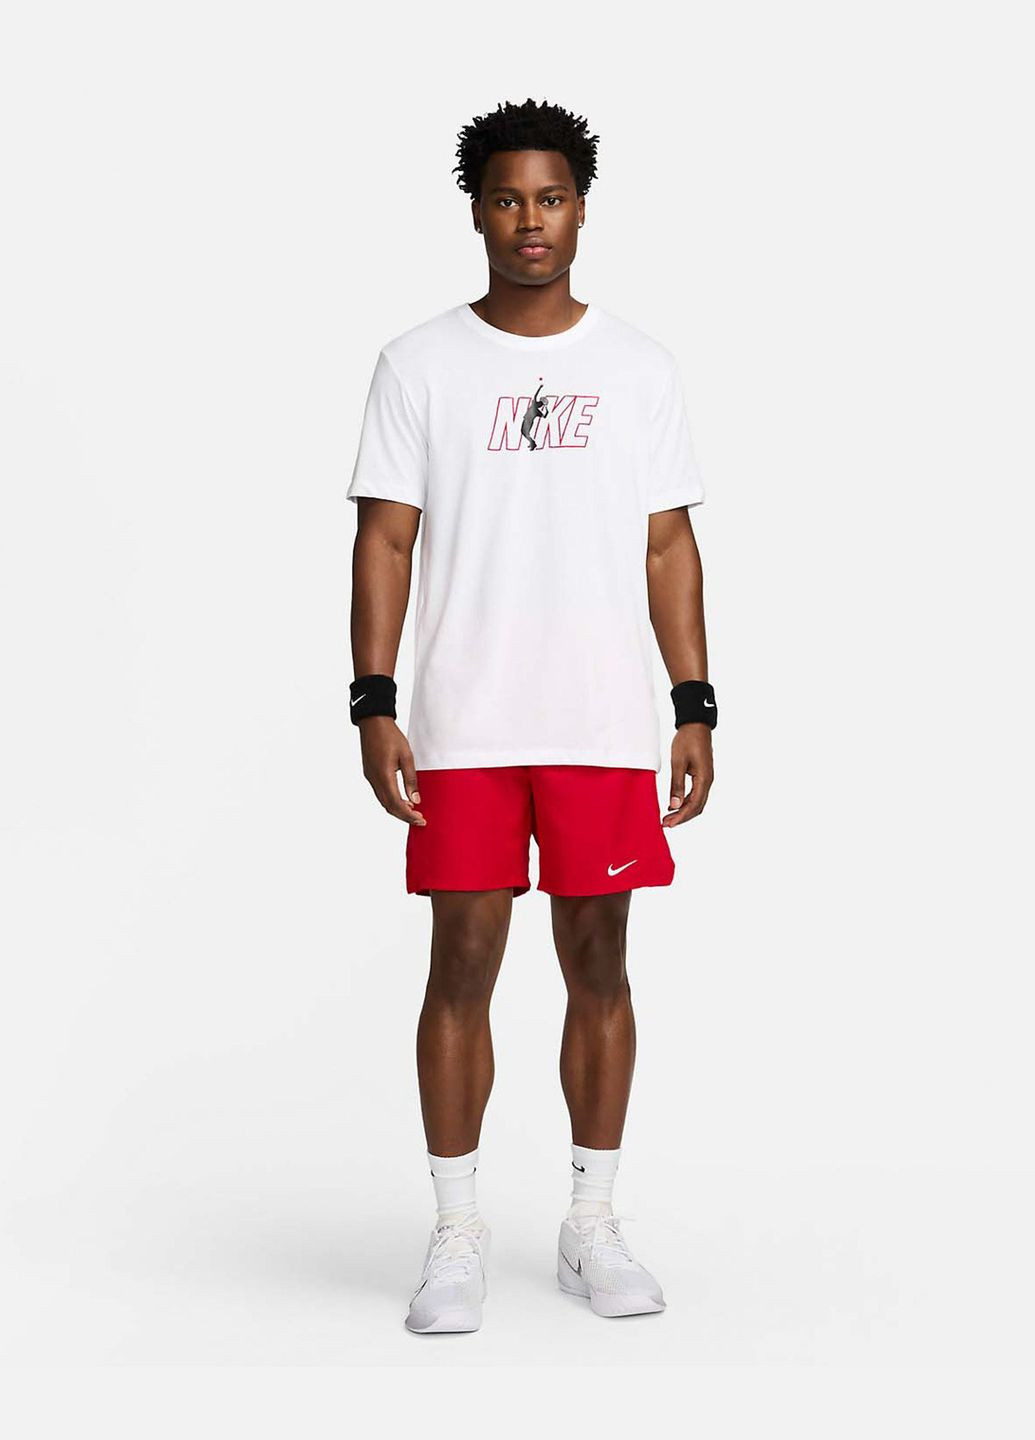 Белая футболка мужская court men's dri-fit tennis t-hirt fv8434-100 белая Nike